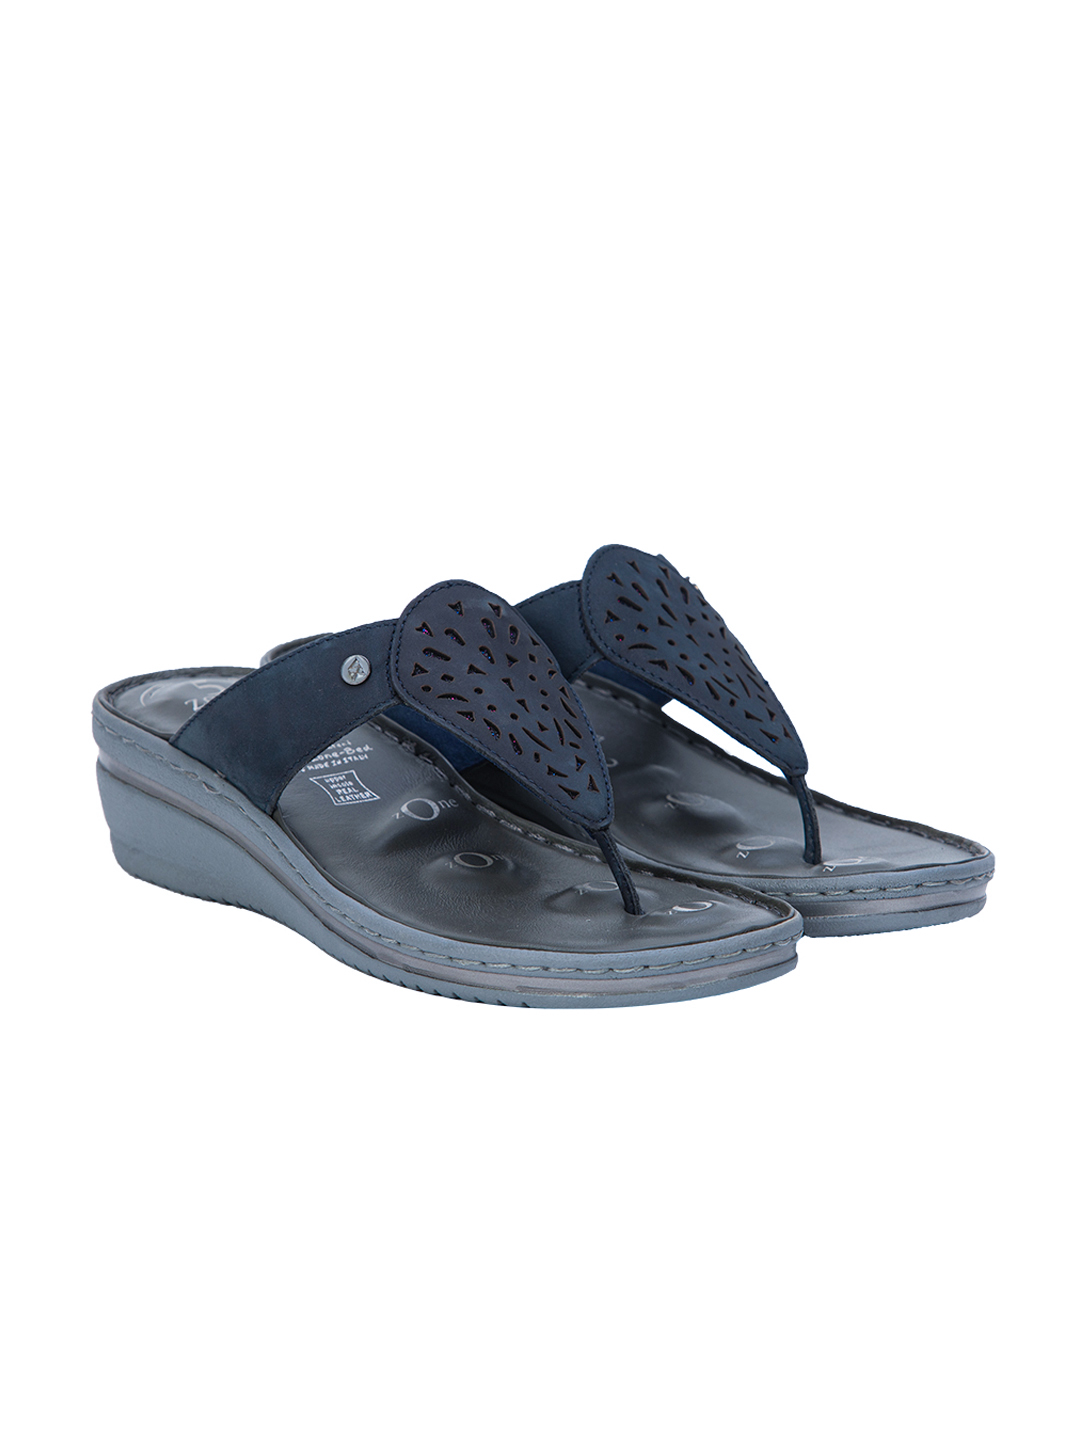 Buy Von Wellx Germany Comfort Elite Blue Slippers Online in Vadodara